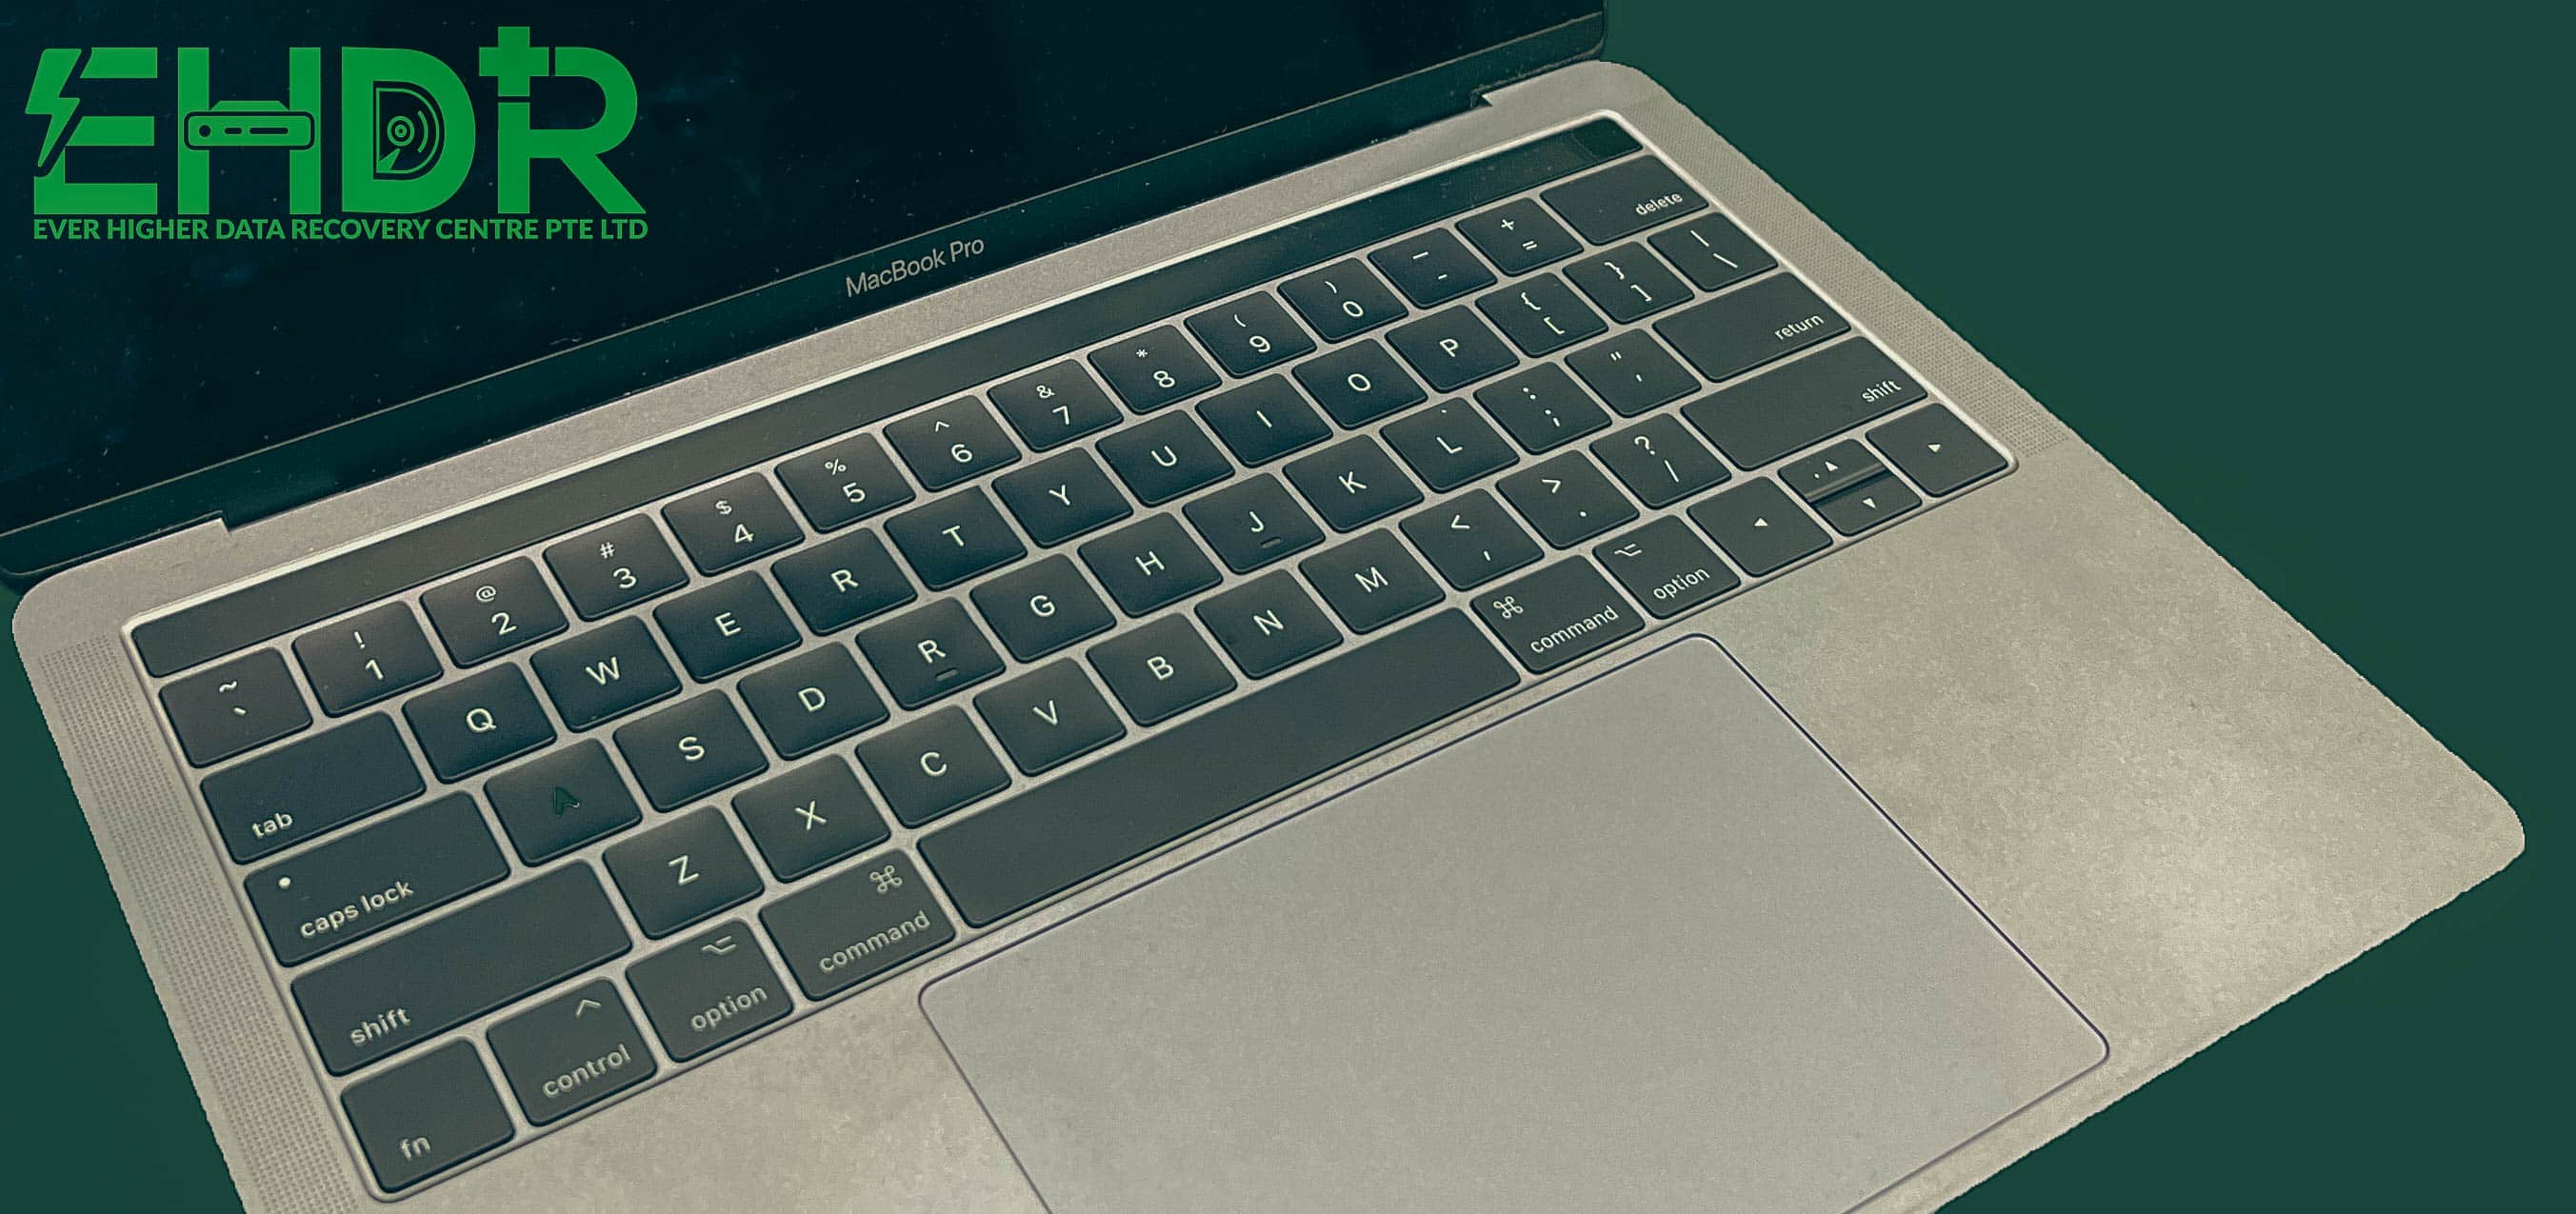 15 Sep 2022 – MacBook